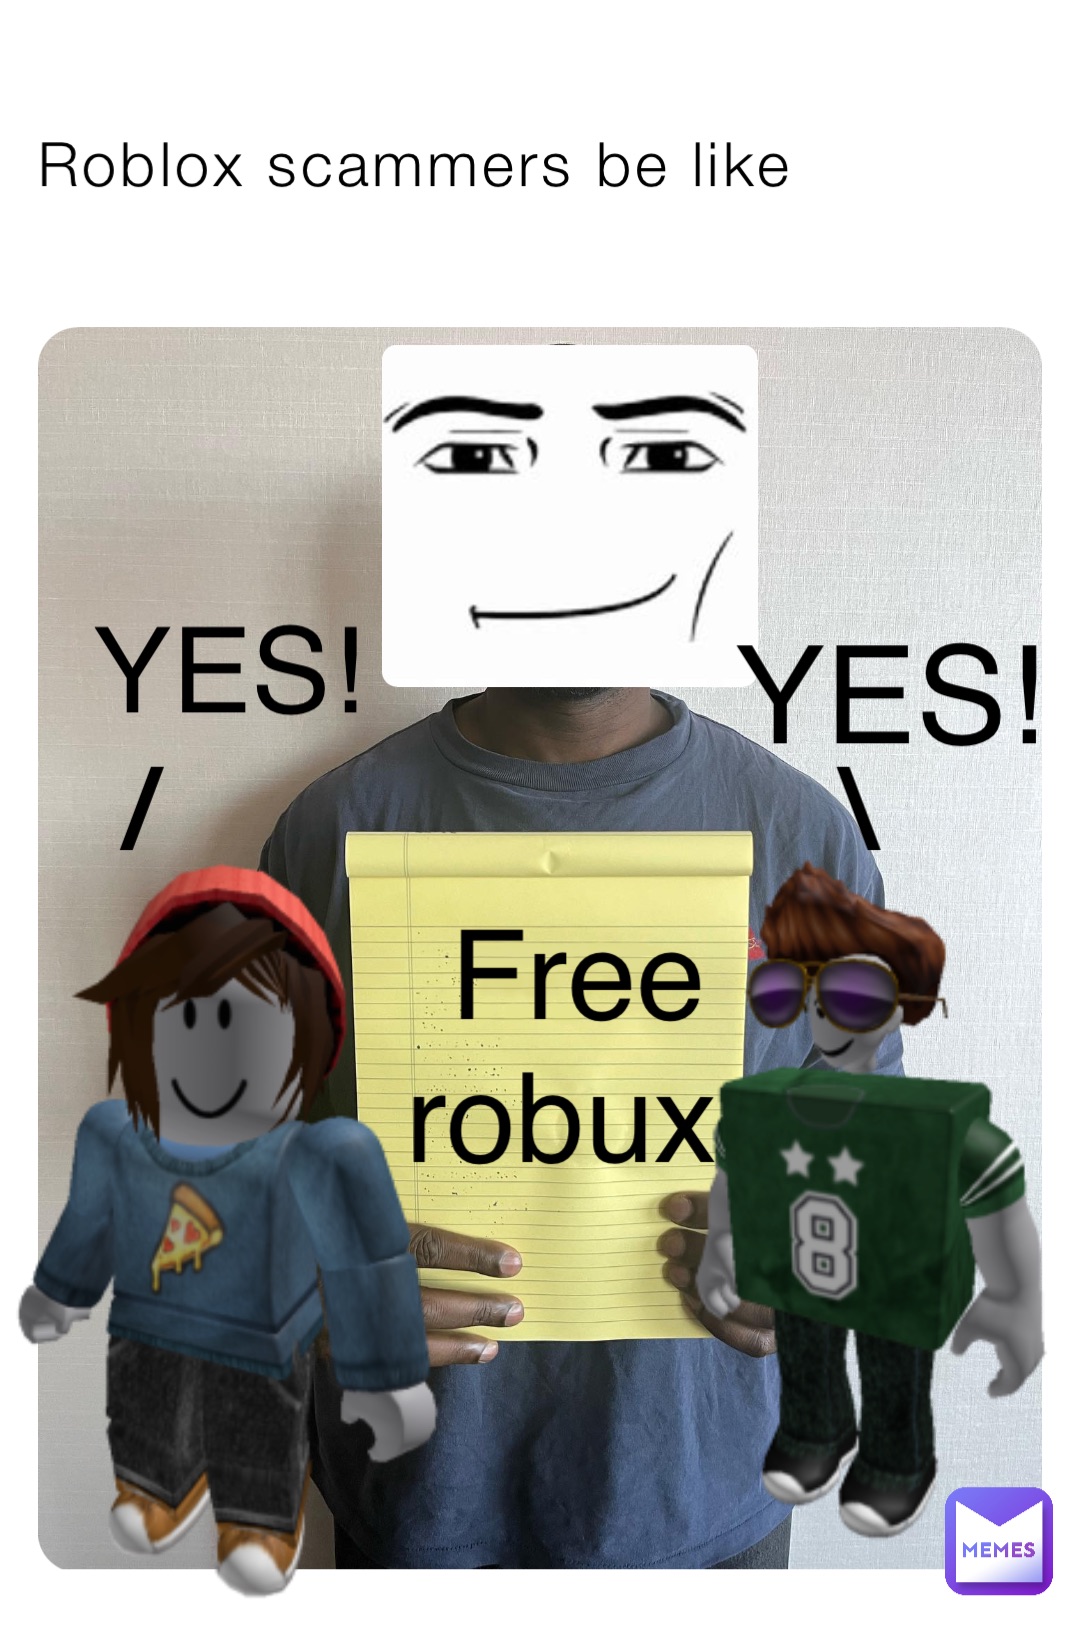 Roblox memes - 23  Roblox memes, Roblox funny, Roblox cringe